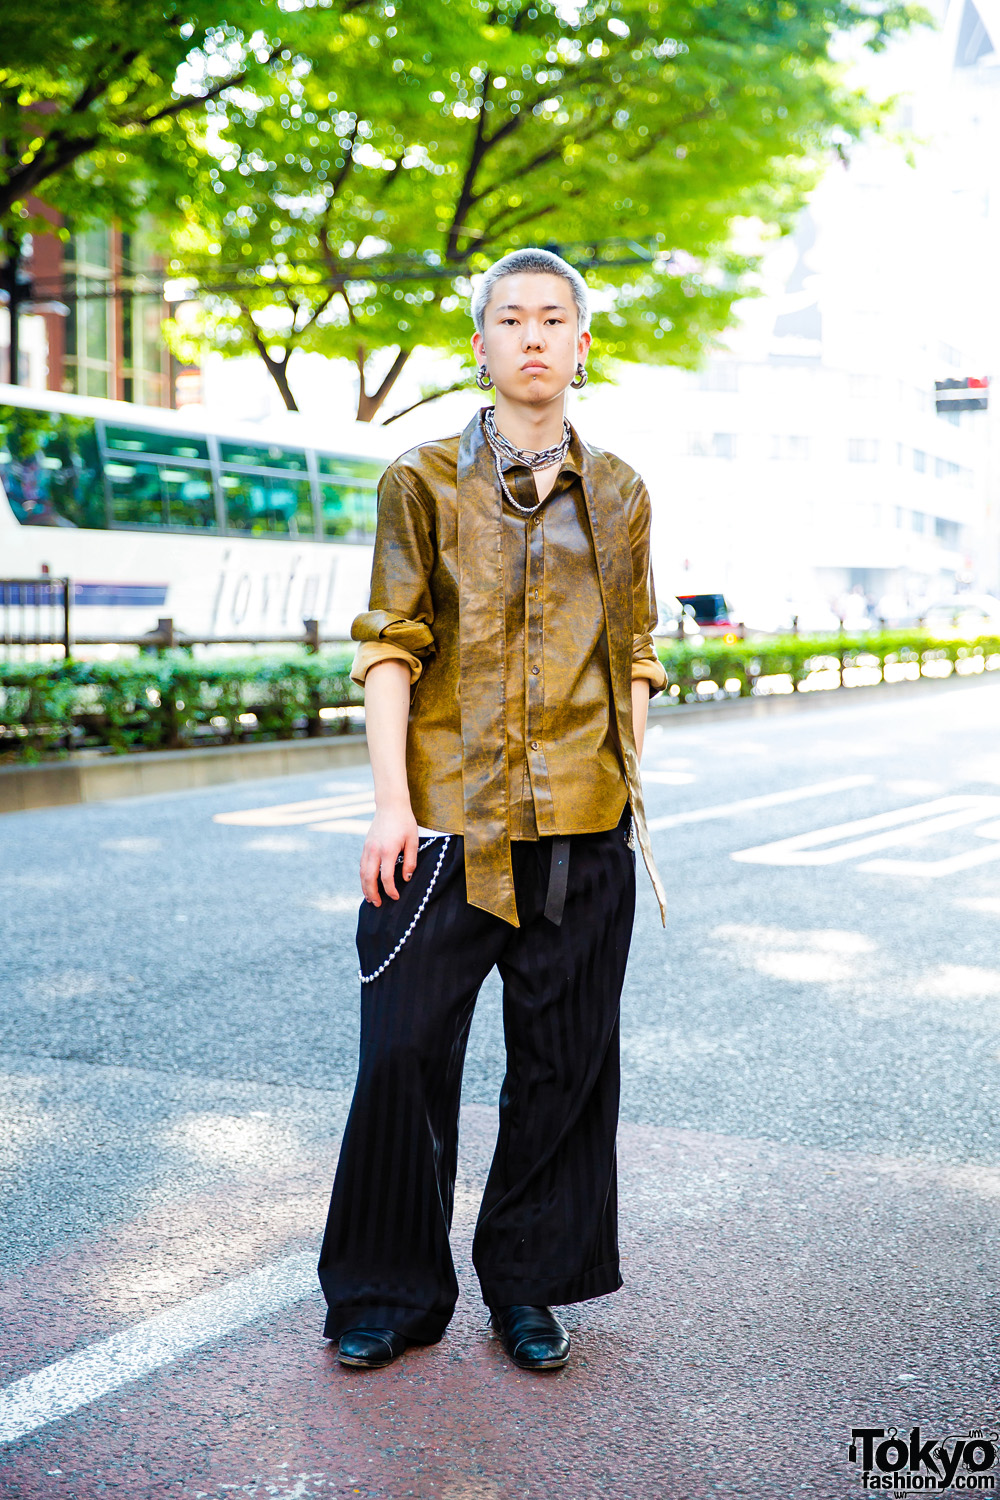 Japanese Hair Stylist in Edgy Tokyo Street Fashion w/ Barragan, M.Y.O.B., John Lawrence Sullivan & Gucci